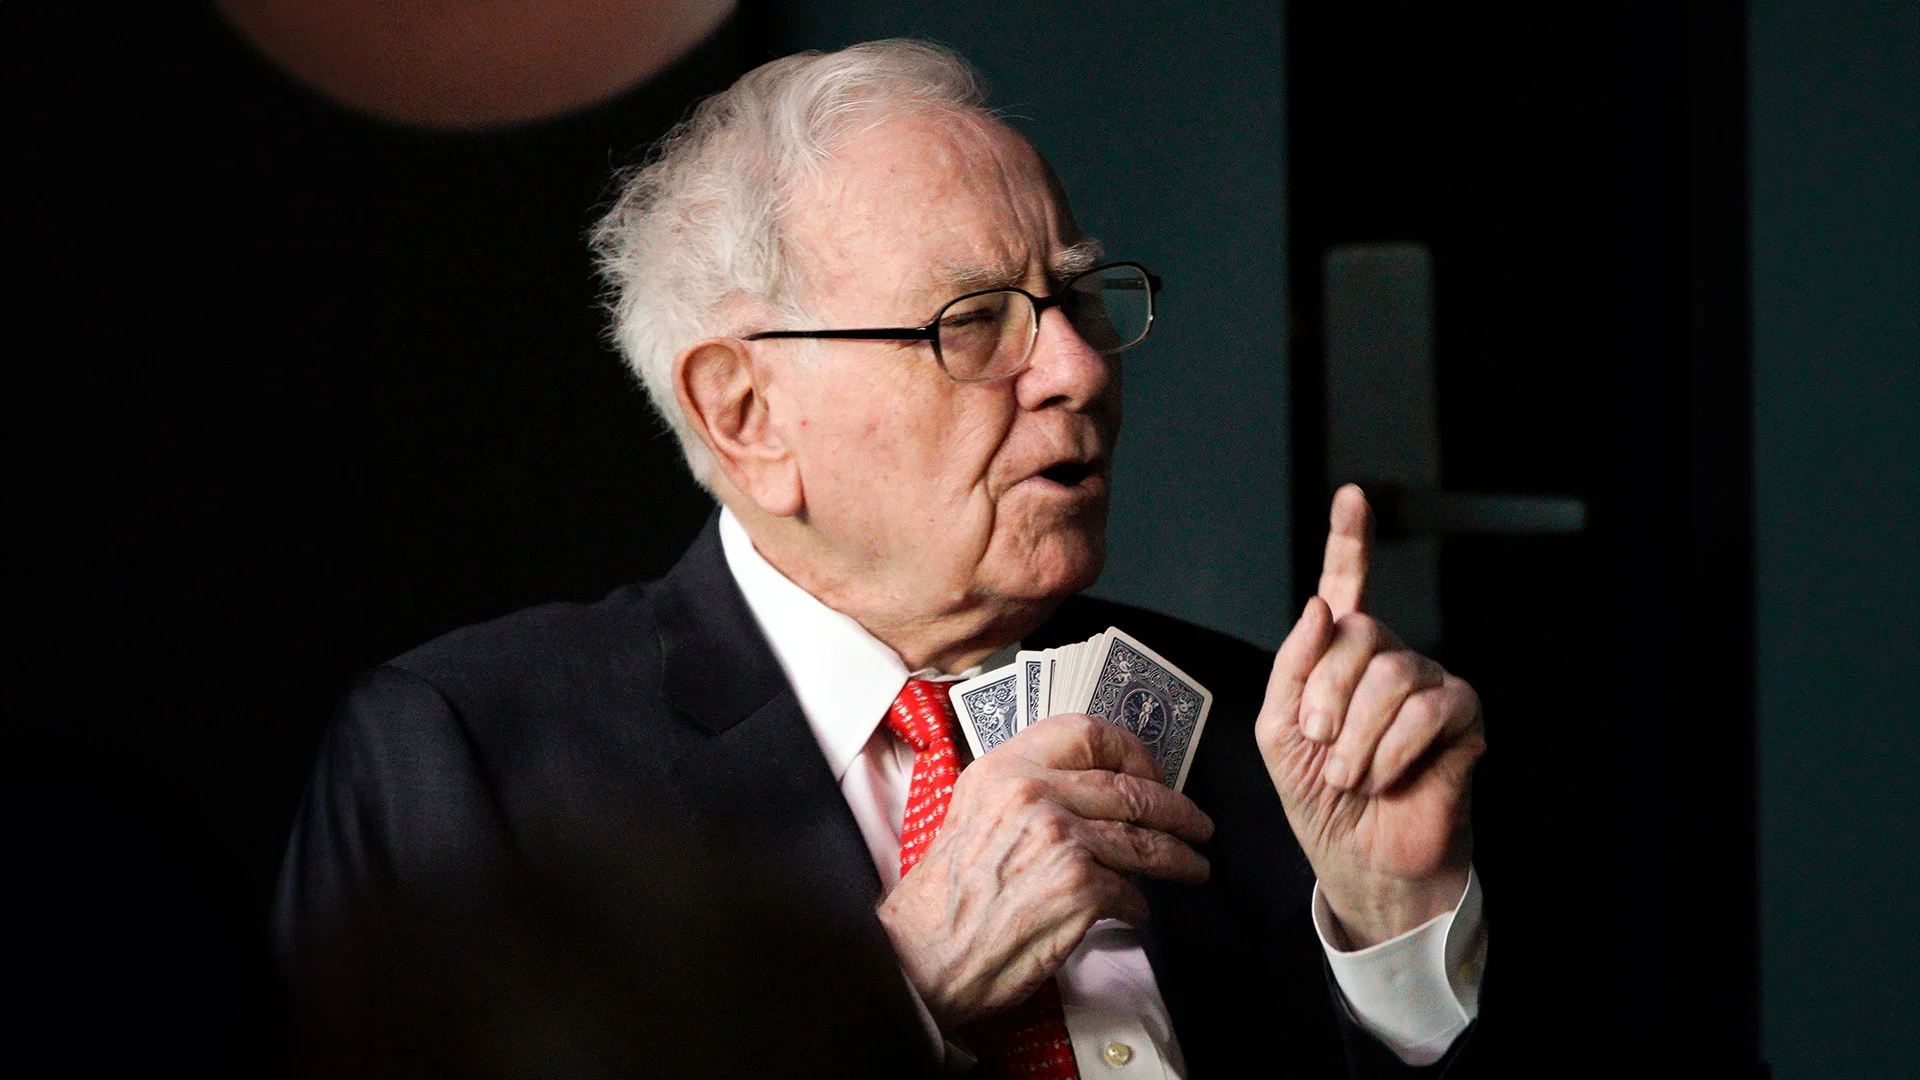 KI findet geniale Warren Buffett mit 60% Kurschance – fast keiner hat sie auf dem Schirm (Foto: AP Images/Nati Harnik/picture alliance/dpa)